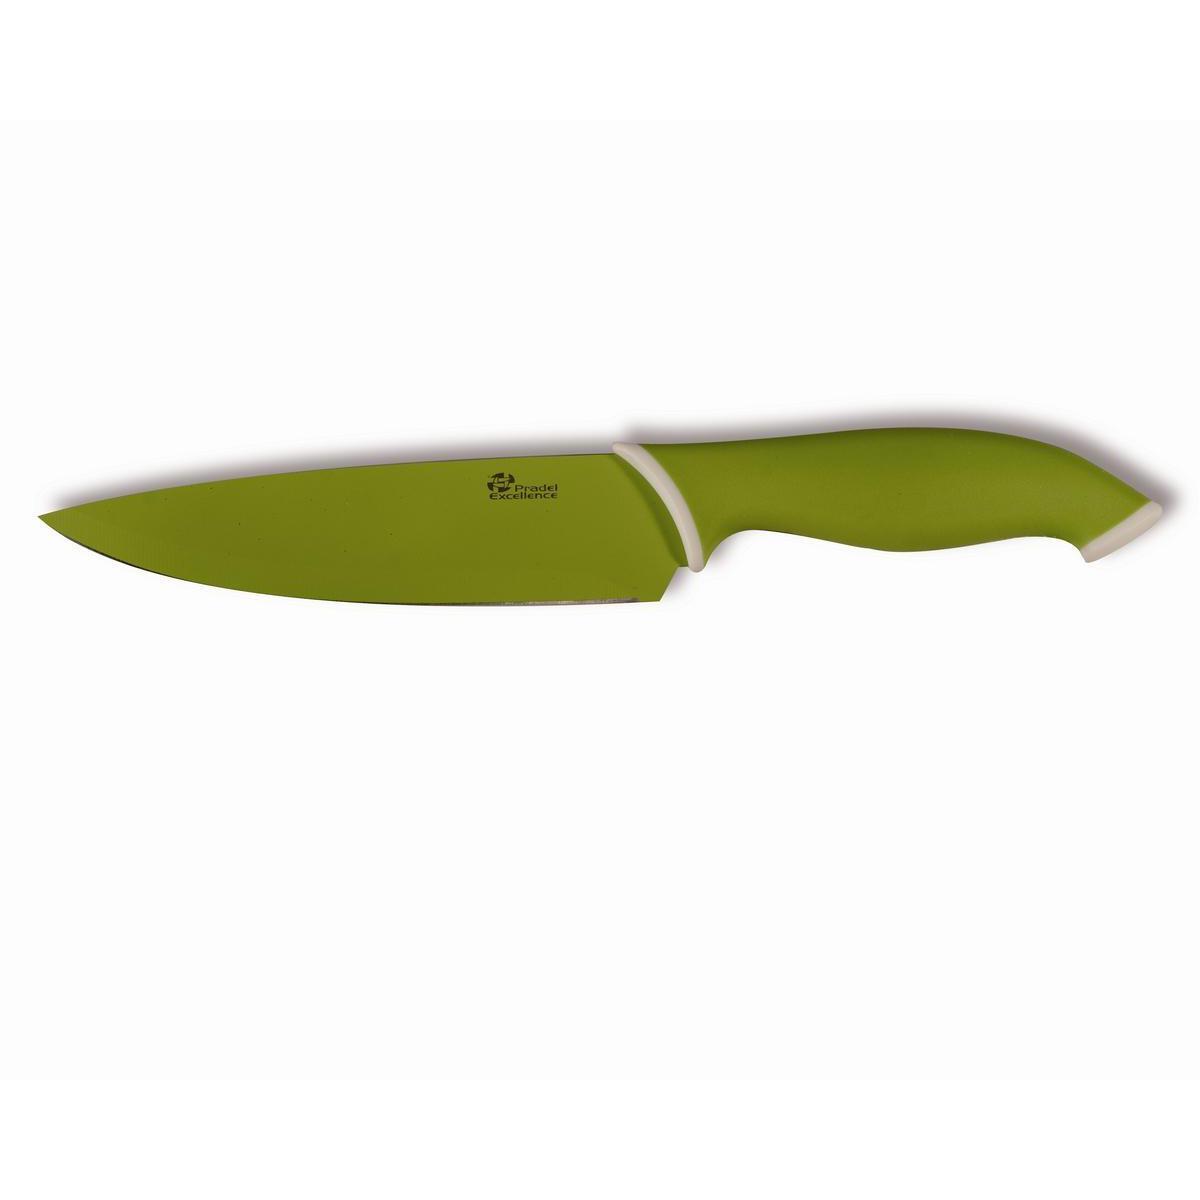 Couteau à découper lame anis - Acier inoxydable - Manche abs - 15,2 cm - Vert